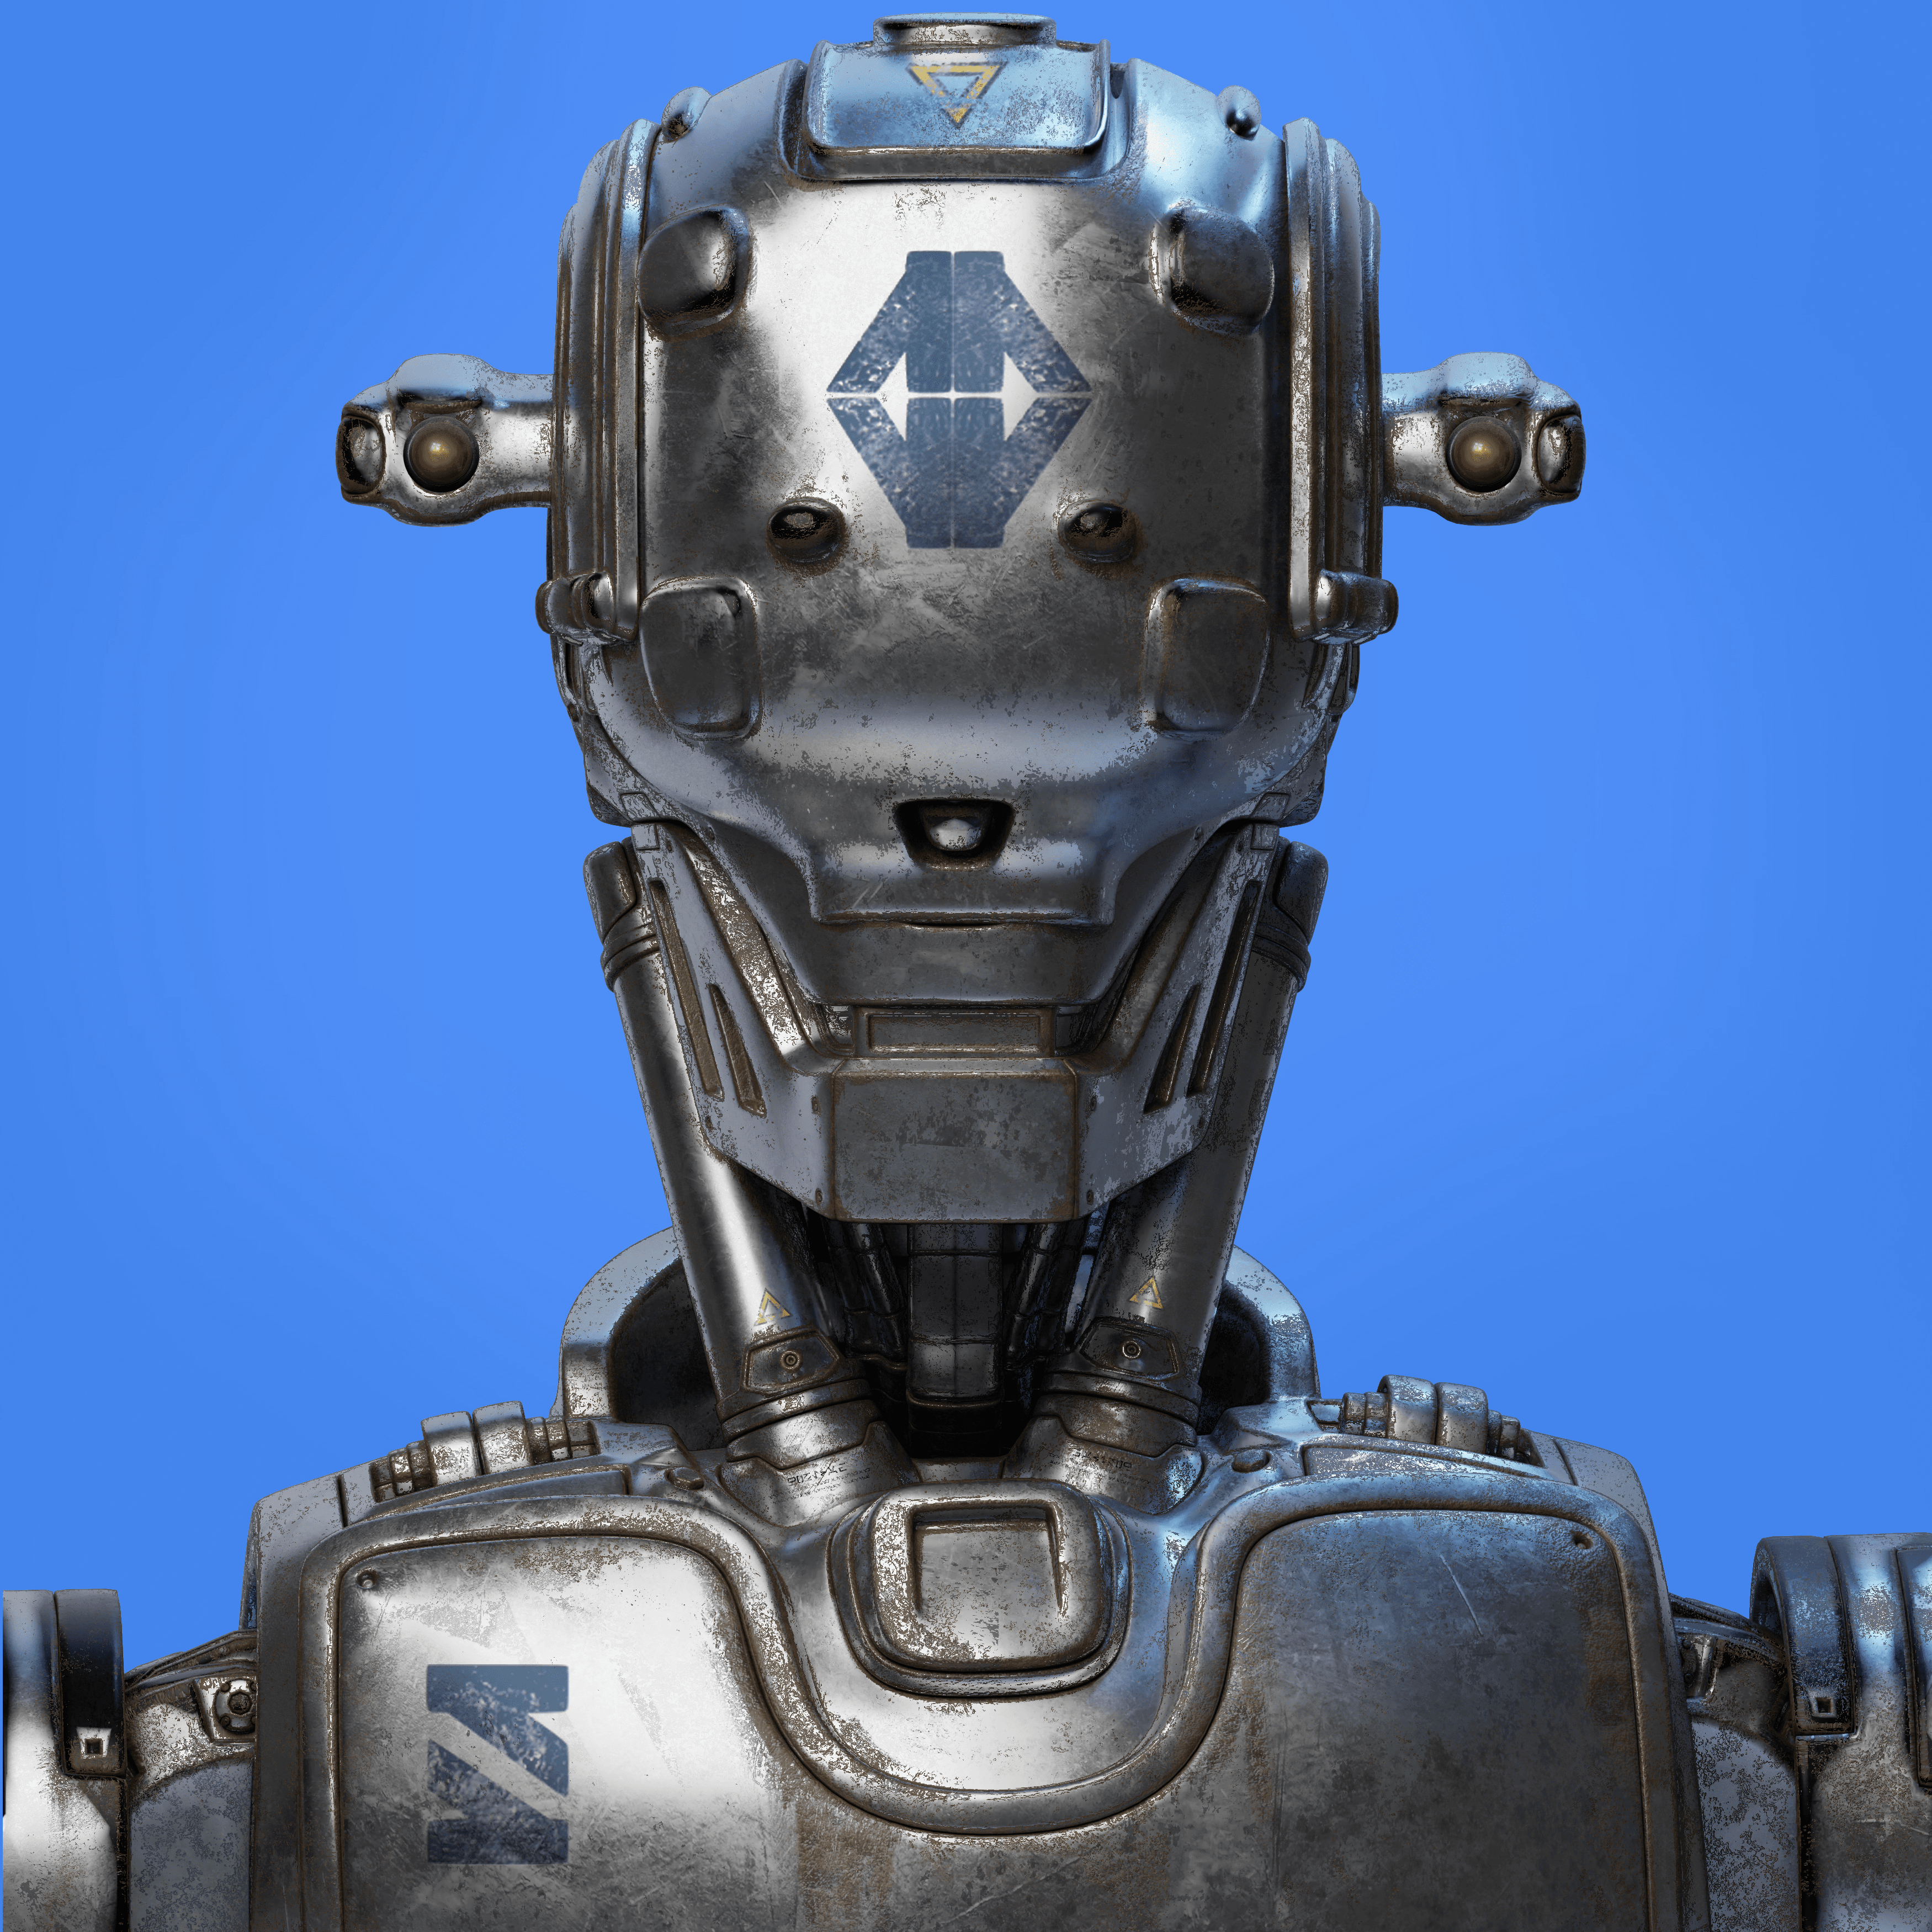 HUXLEY Robot #661